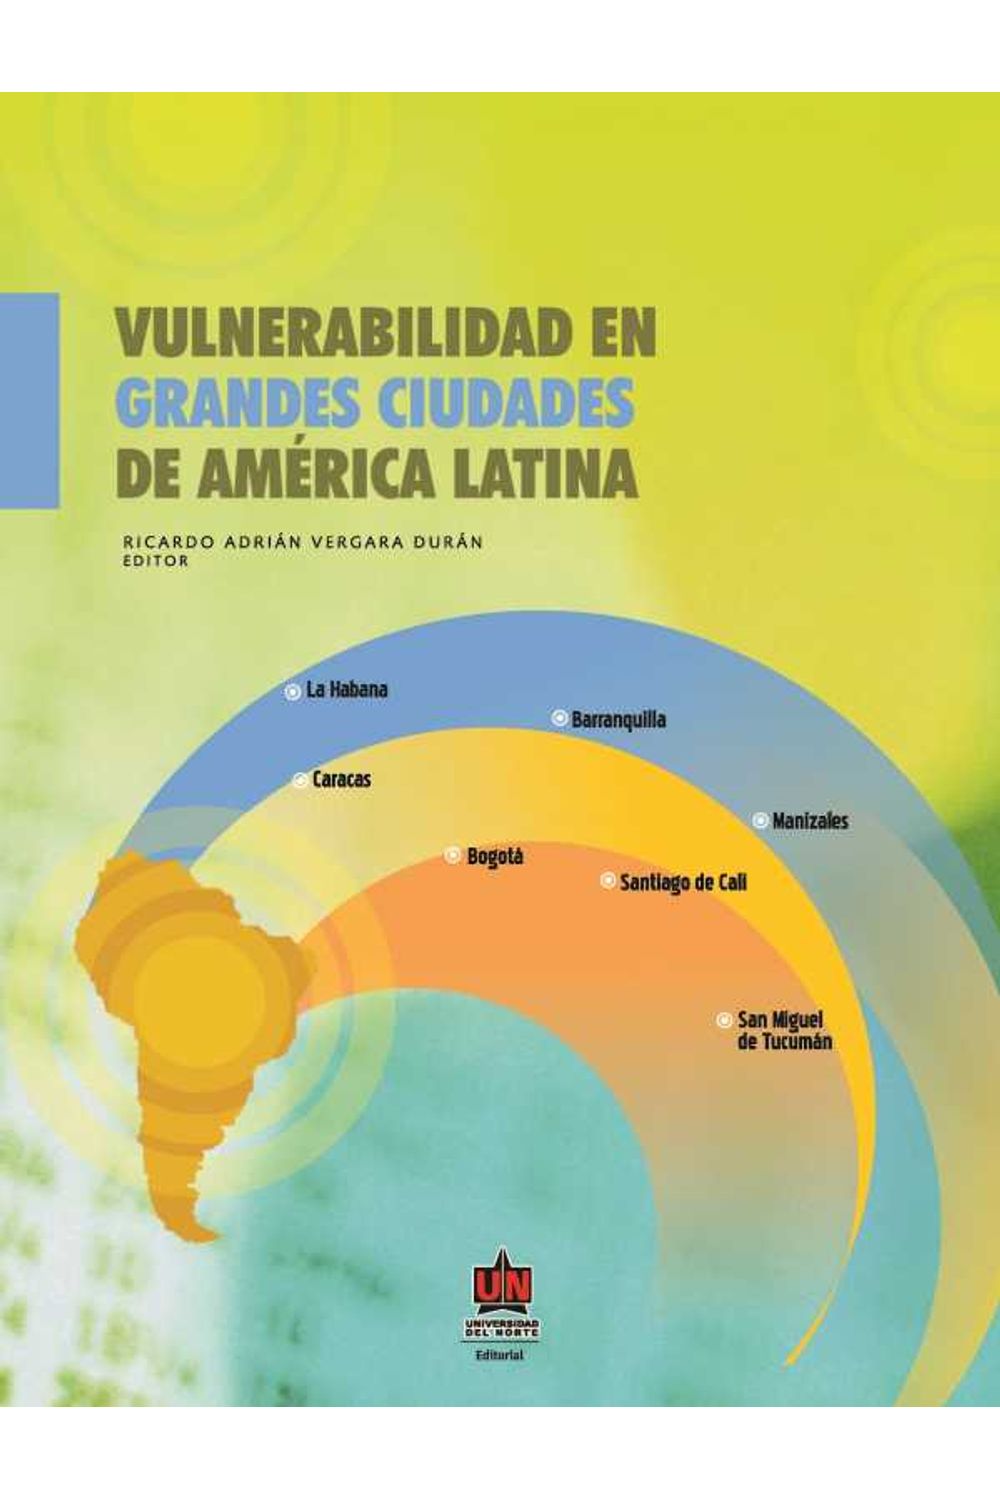 bw-vulnerabilidad-en-grandes-ciudades-de-ameacuterica-latina-u-del-norte-editorial-9789587411218